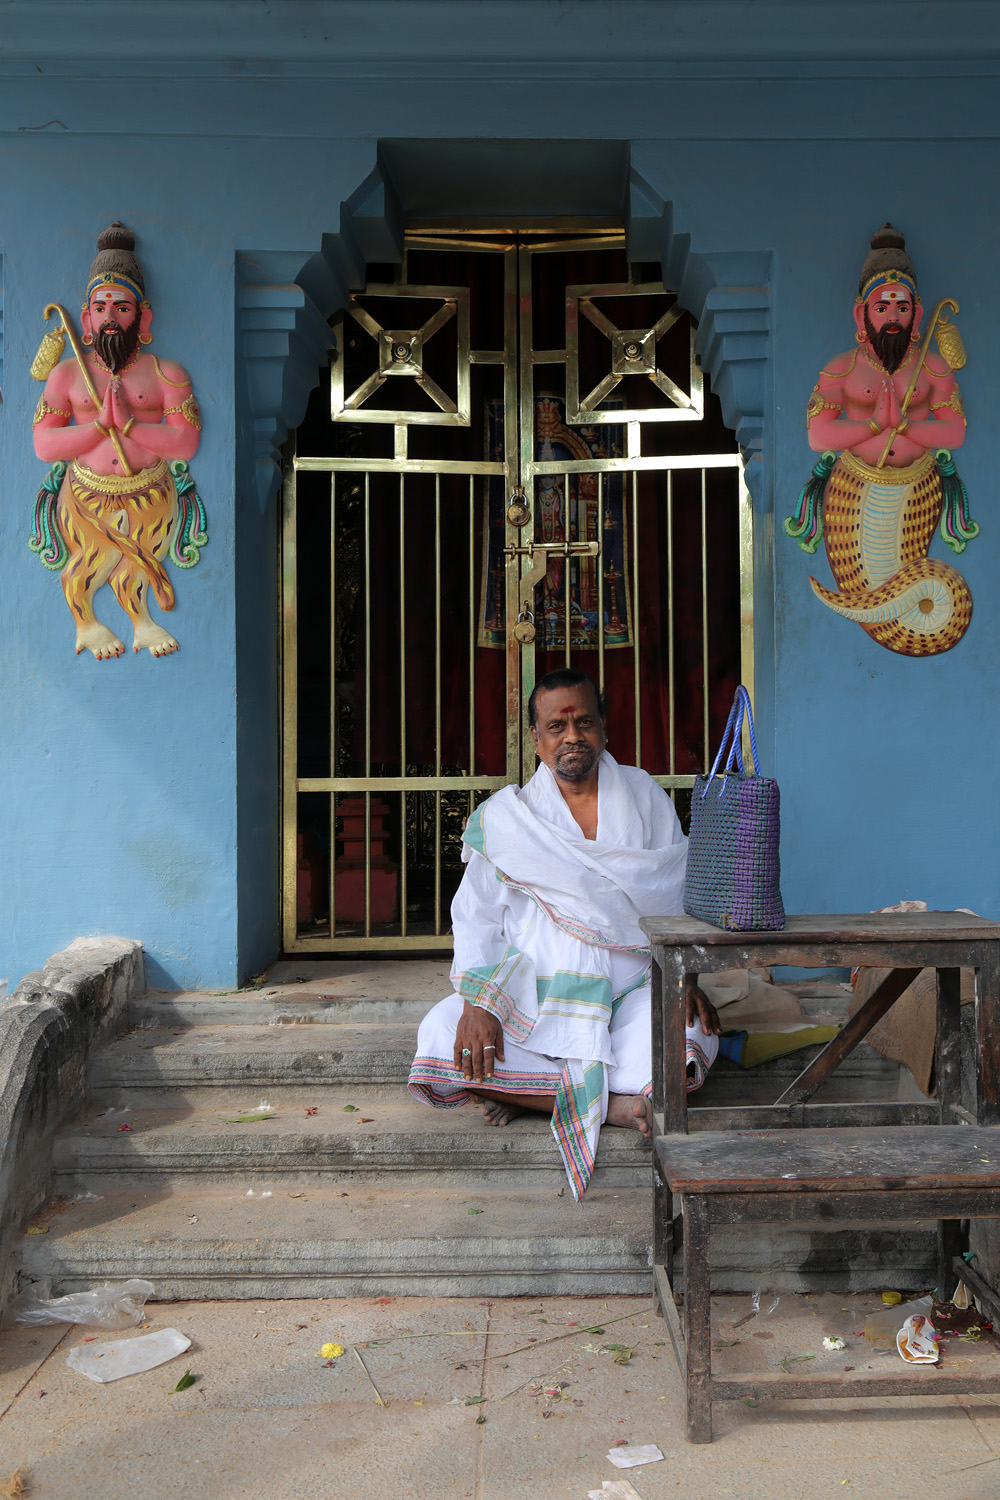 bill-hocker-priest-vedapuheeswarar-temple-pondicherry-india-2018